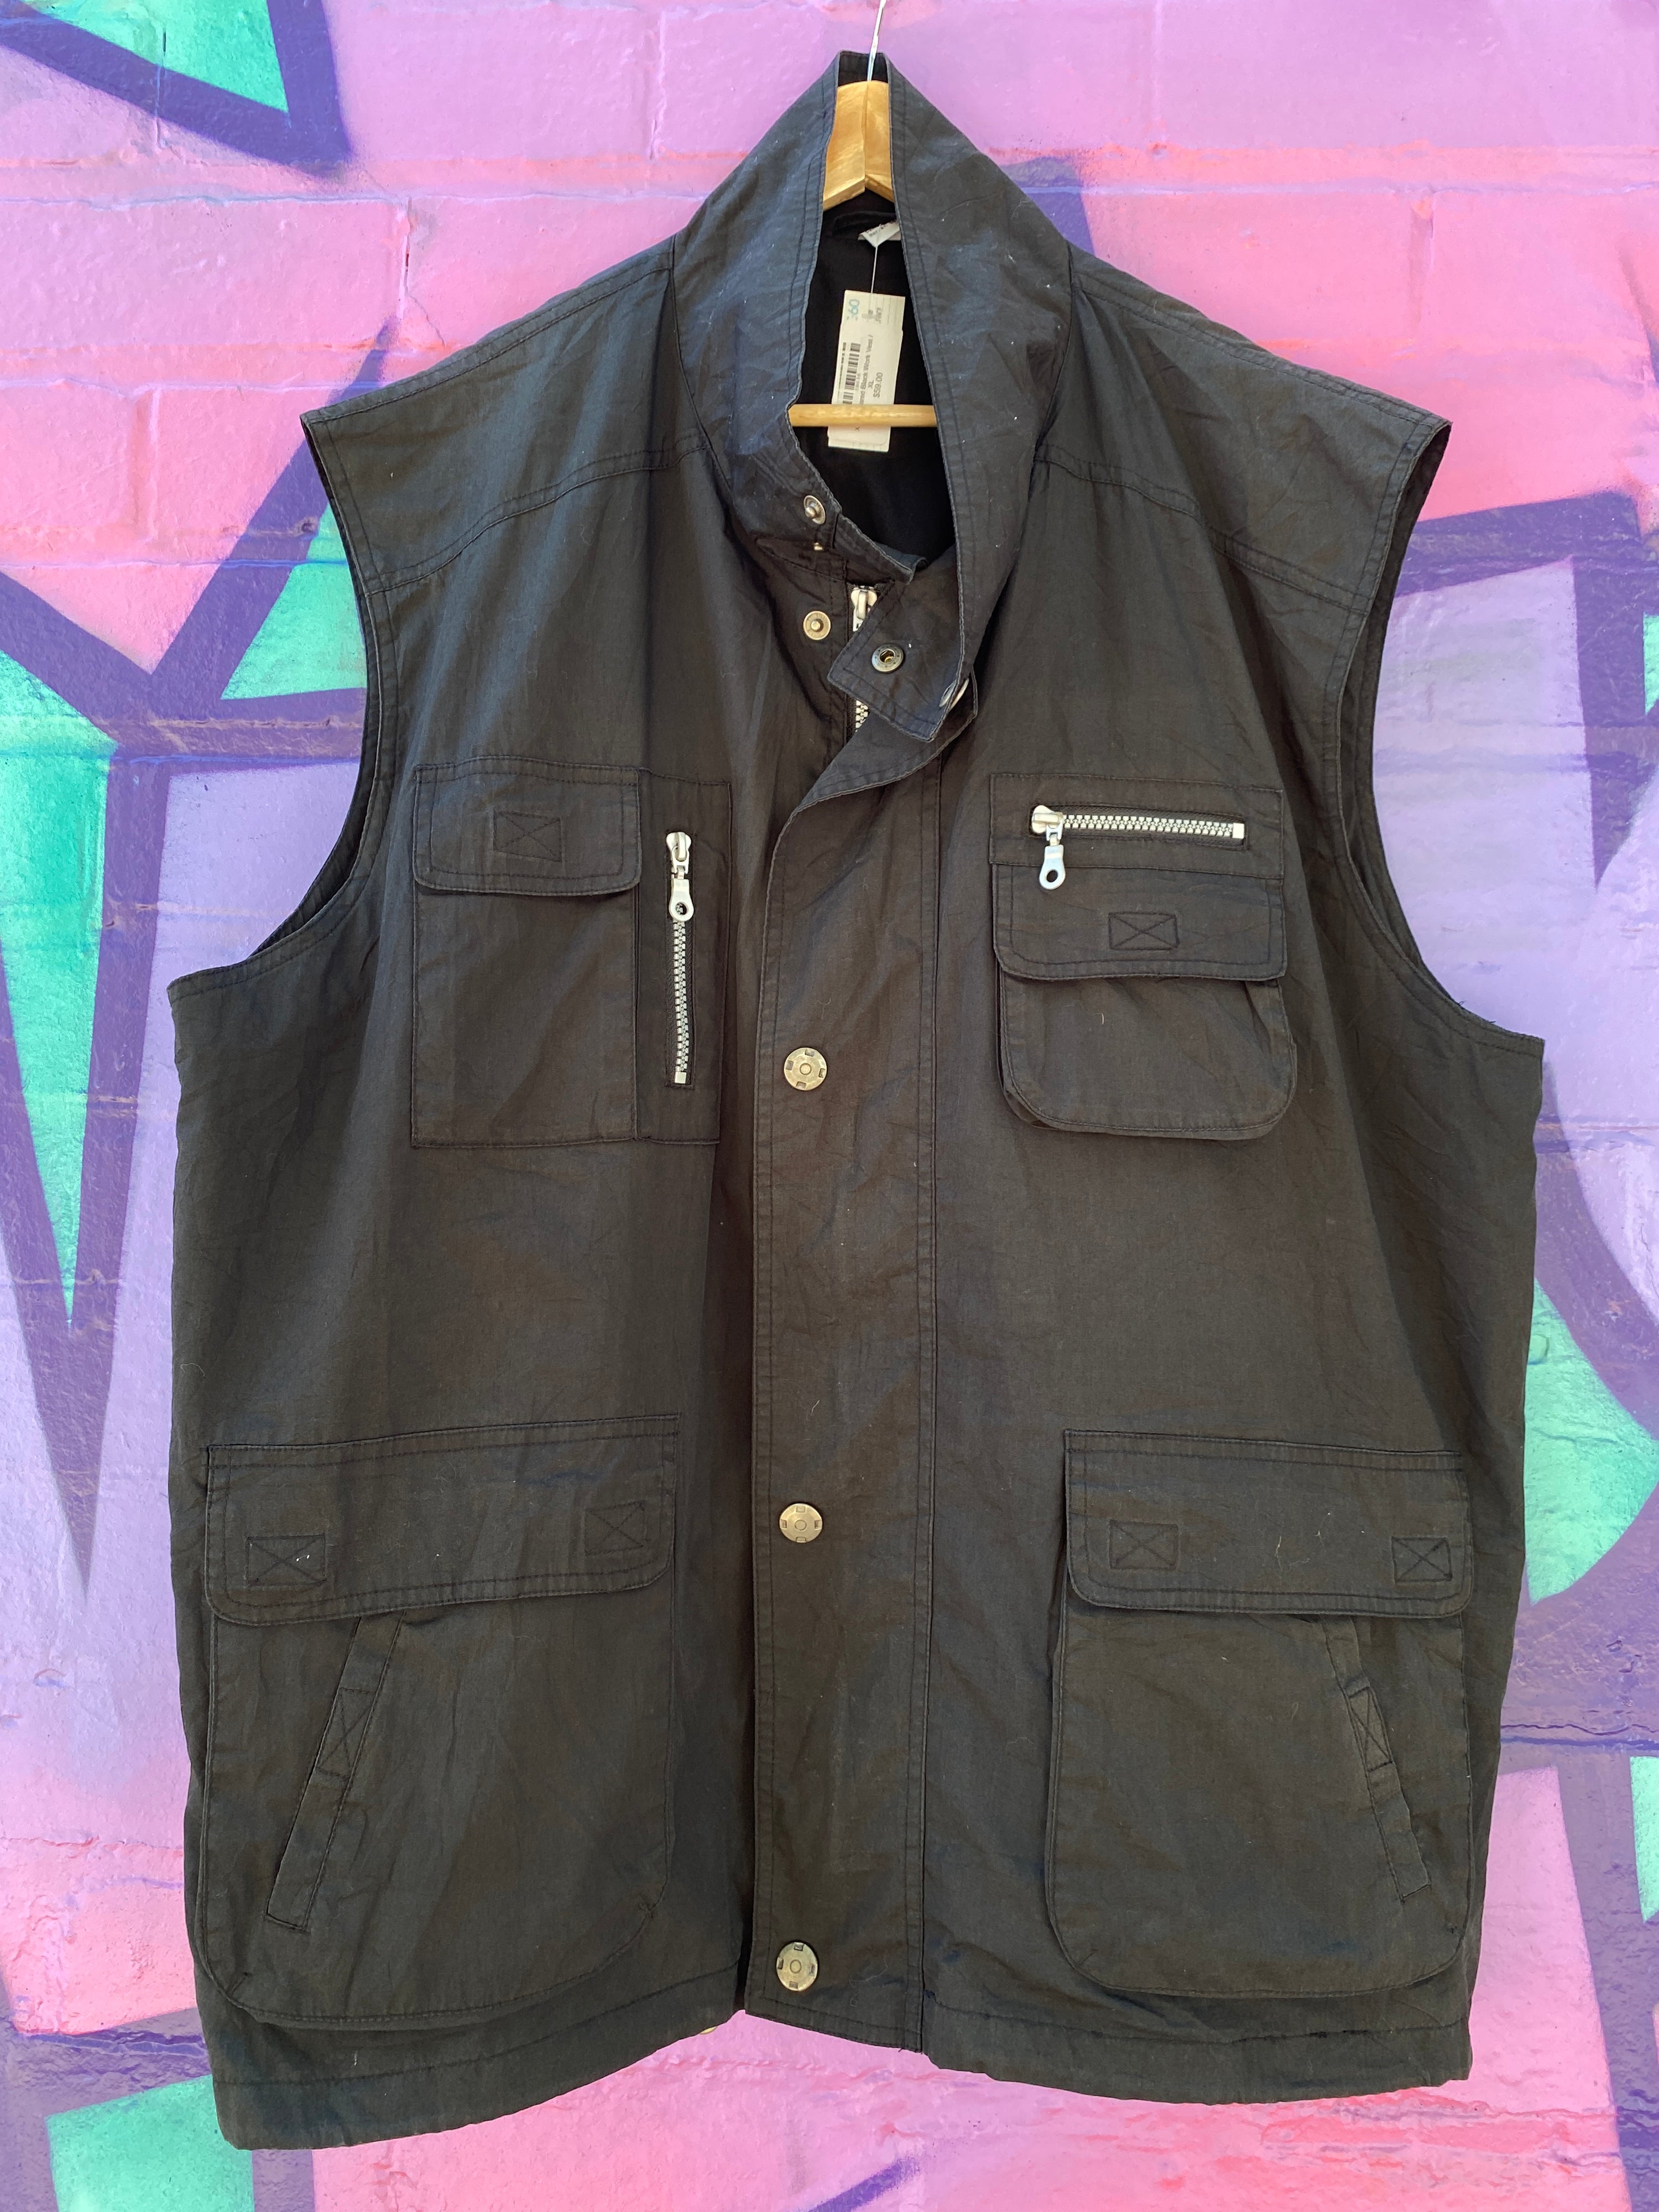 XL - Collared Black Work Vest